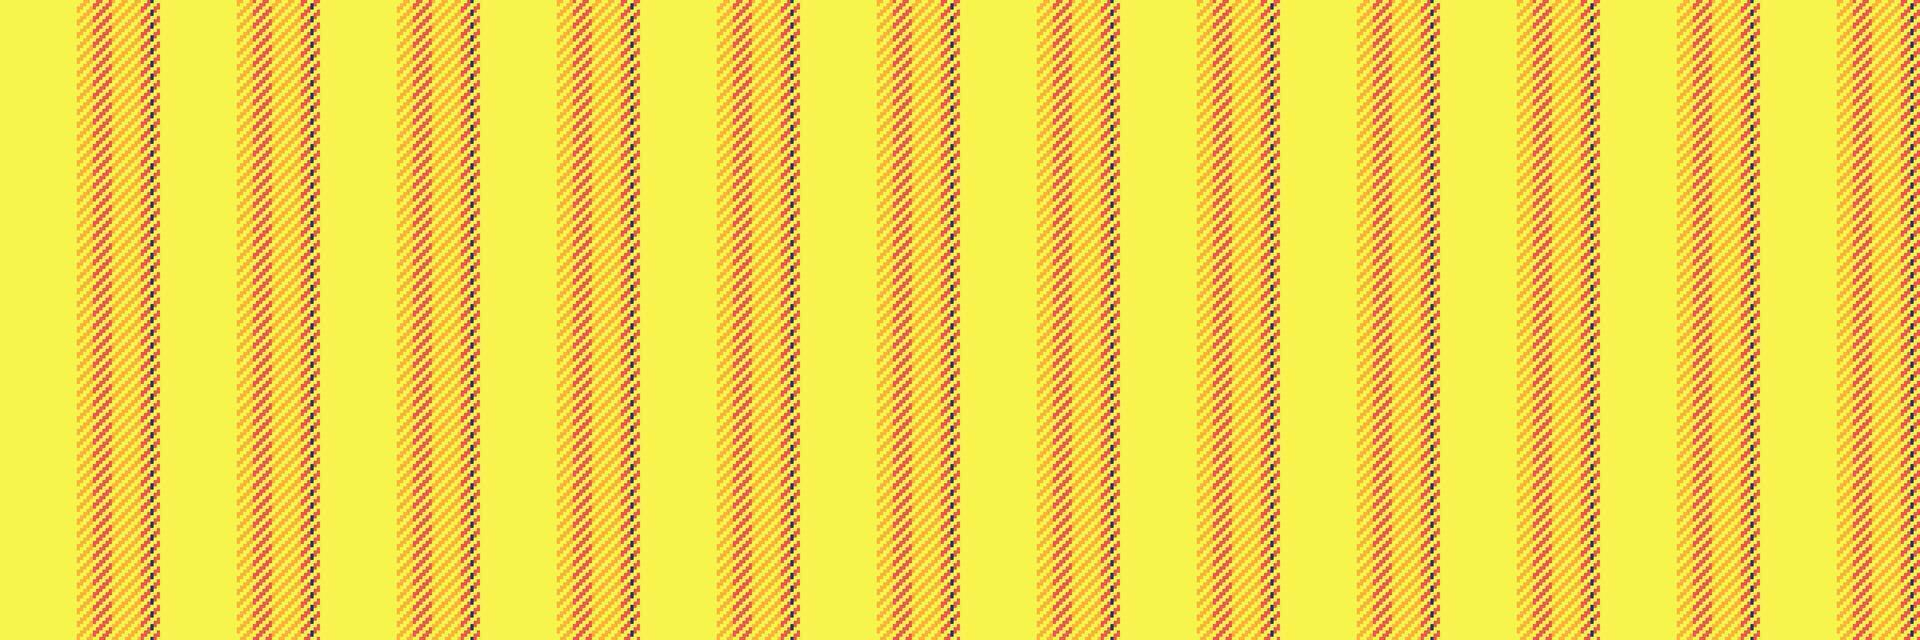 guld bakgrund vertikal vektor, slöja rand textil- rader. service mönster tyg sömlös textur i gul och bärnsten färger. vektor